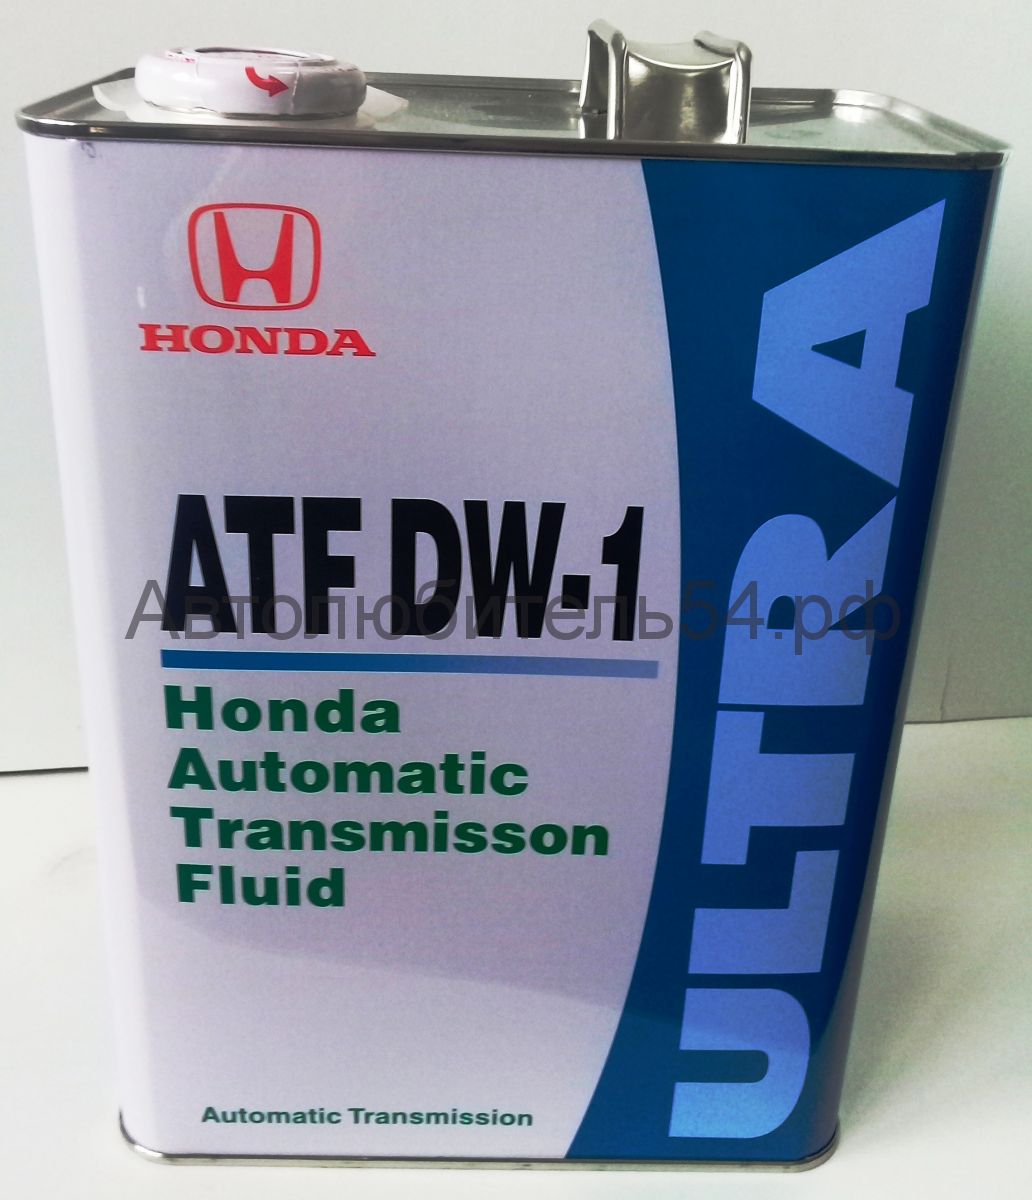 Atf dw1 honda. Honda ATF DW-1. Honda ATF-dw1 4л. Honda DW-1 4л. ATF dw1 Honda артикул.